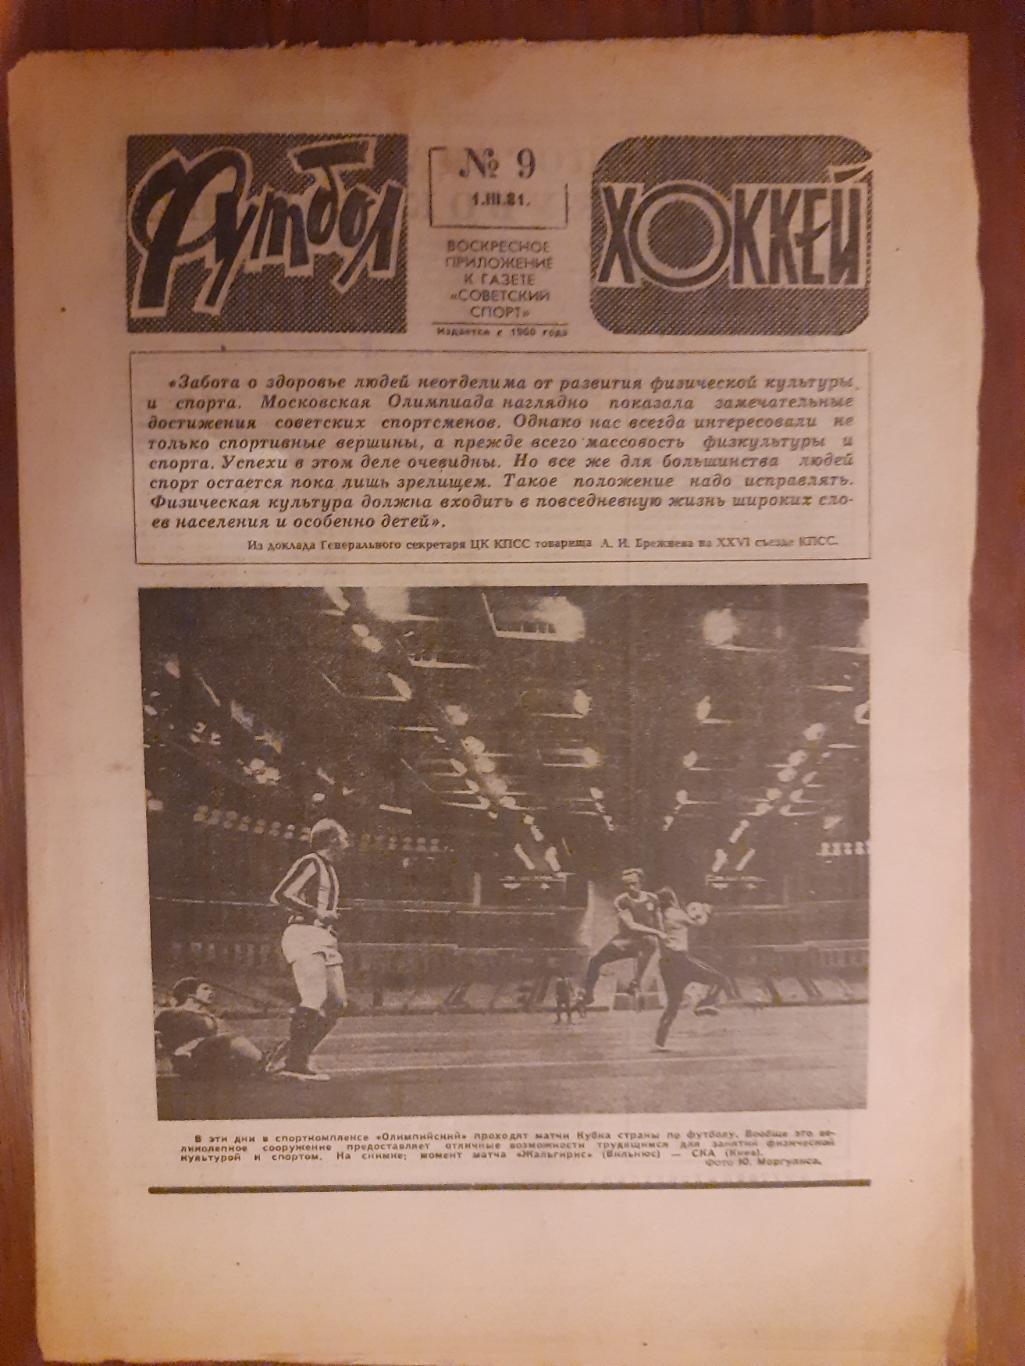 еженедельник футбол-хоккей #9 ,1981